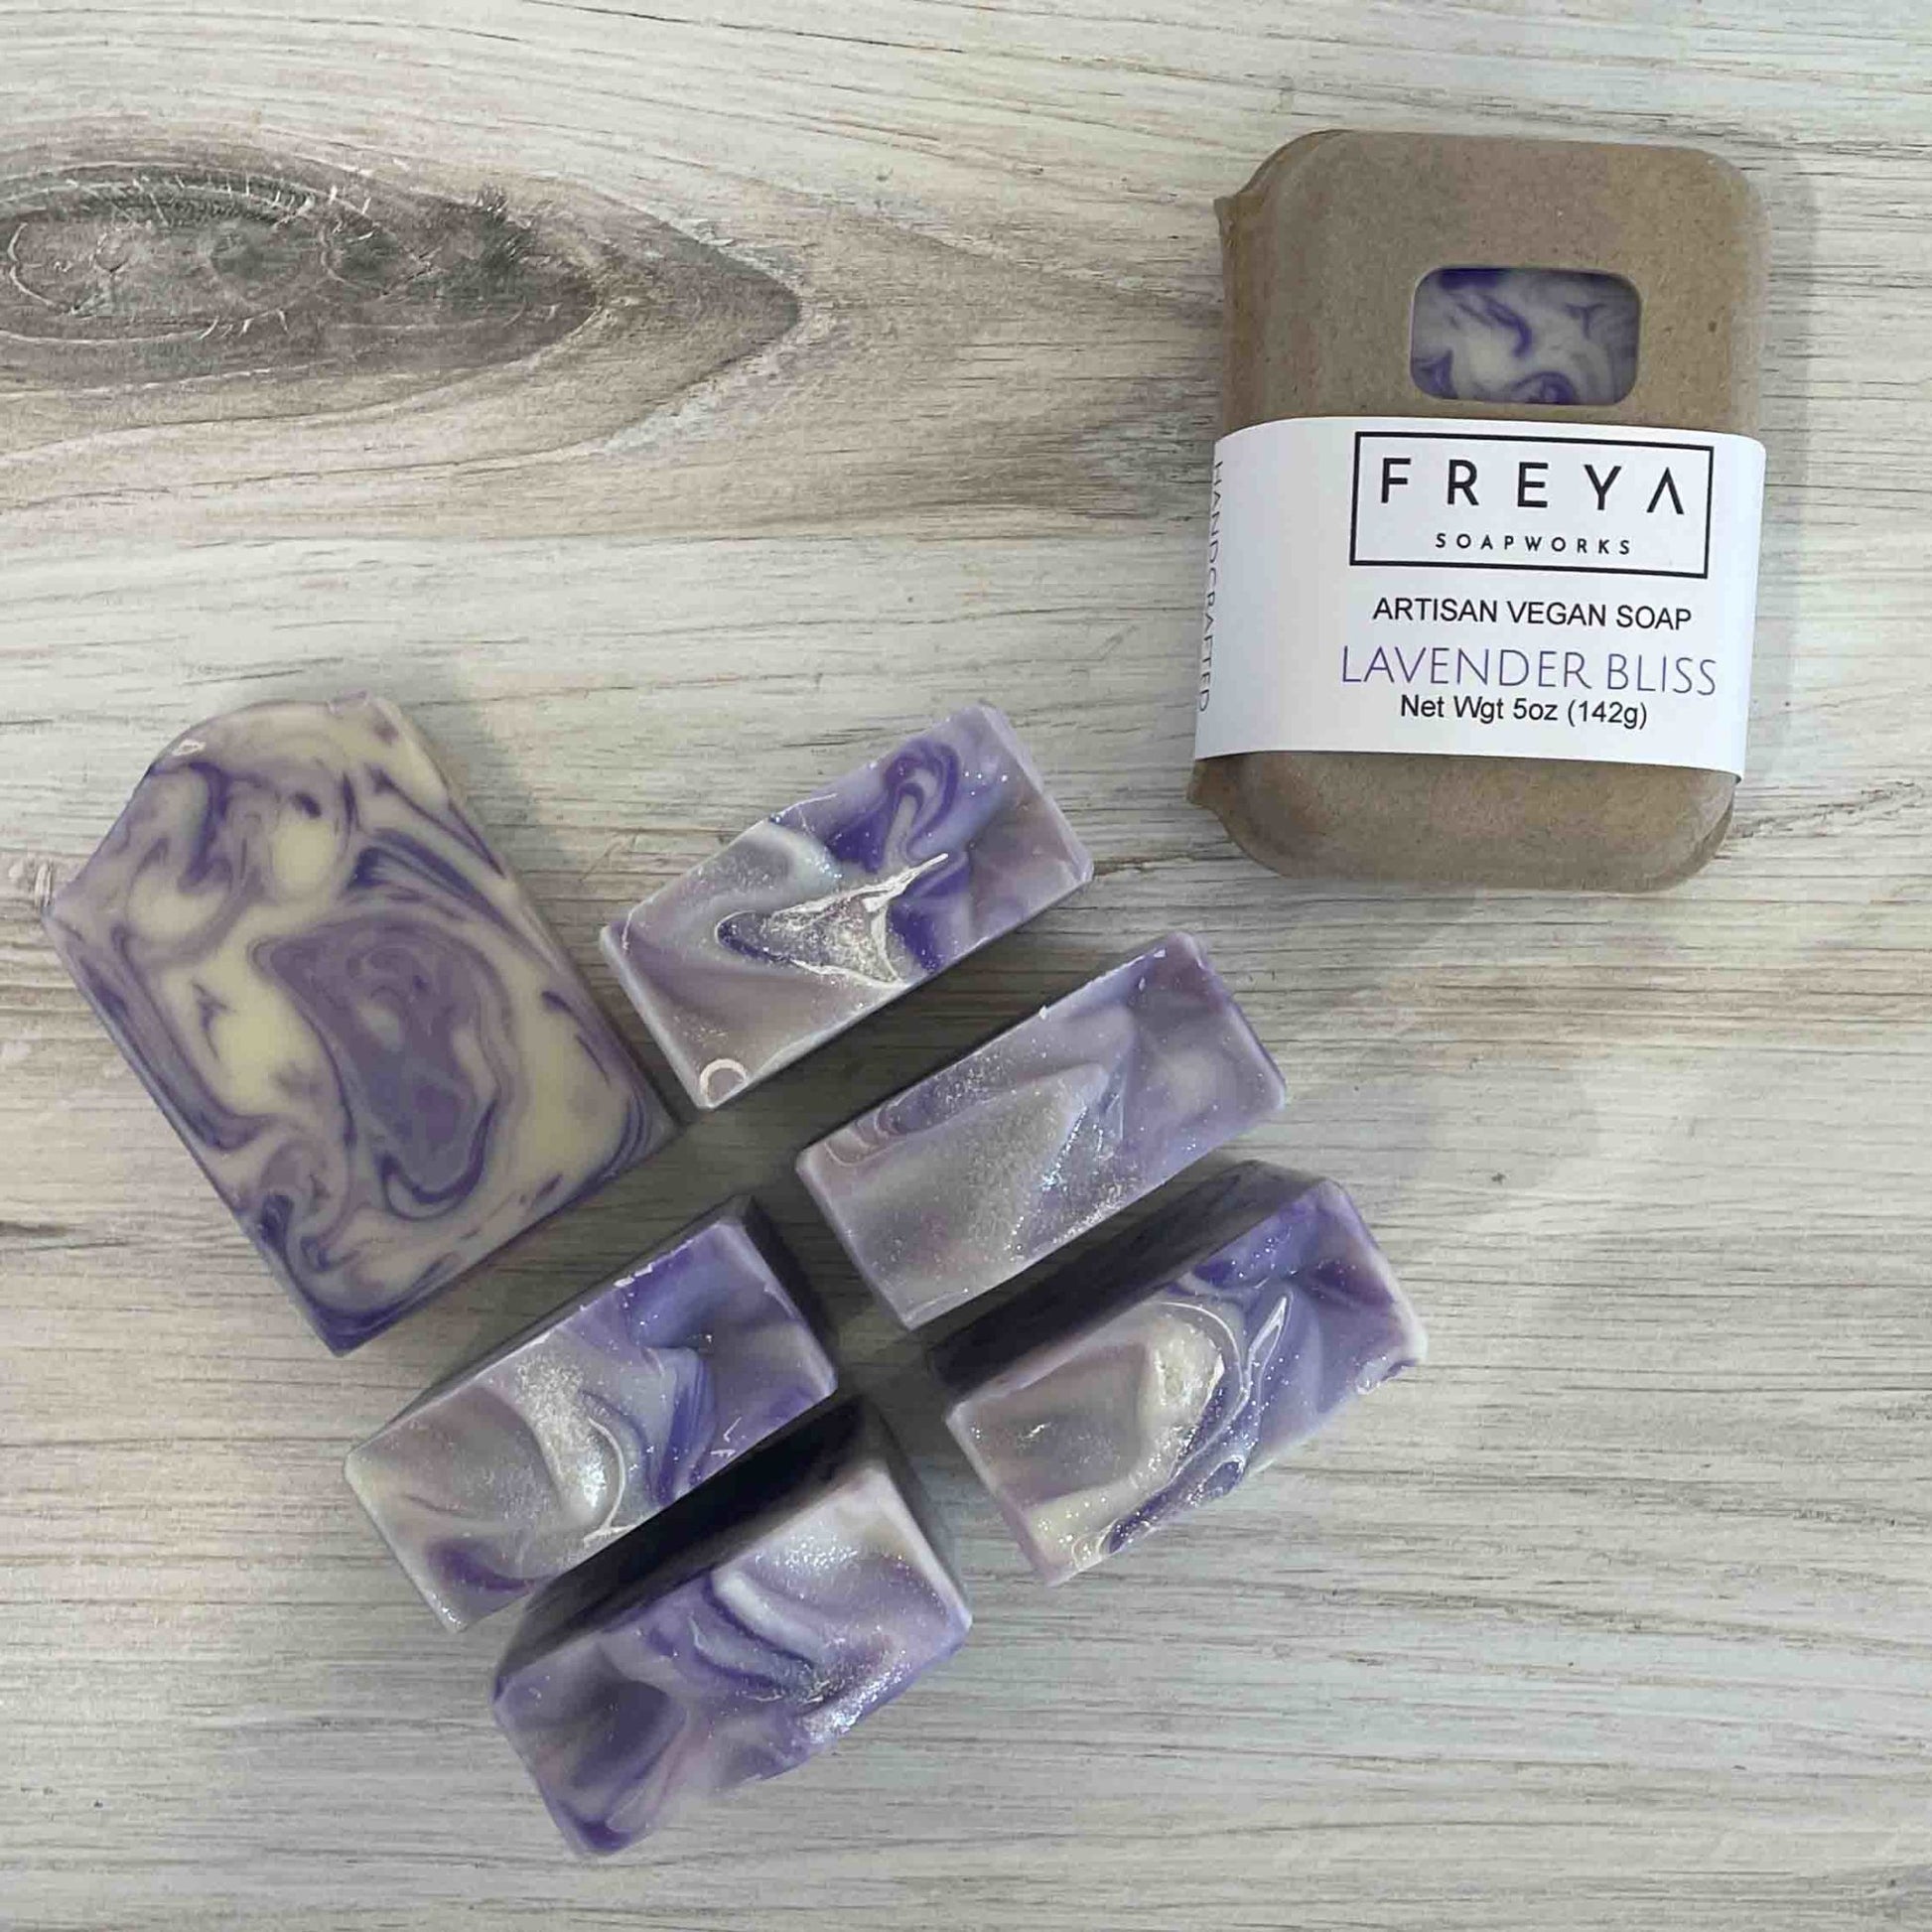 Lavender Bliss - Freya Soapworks